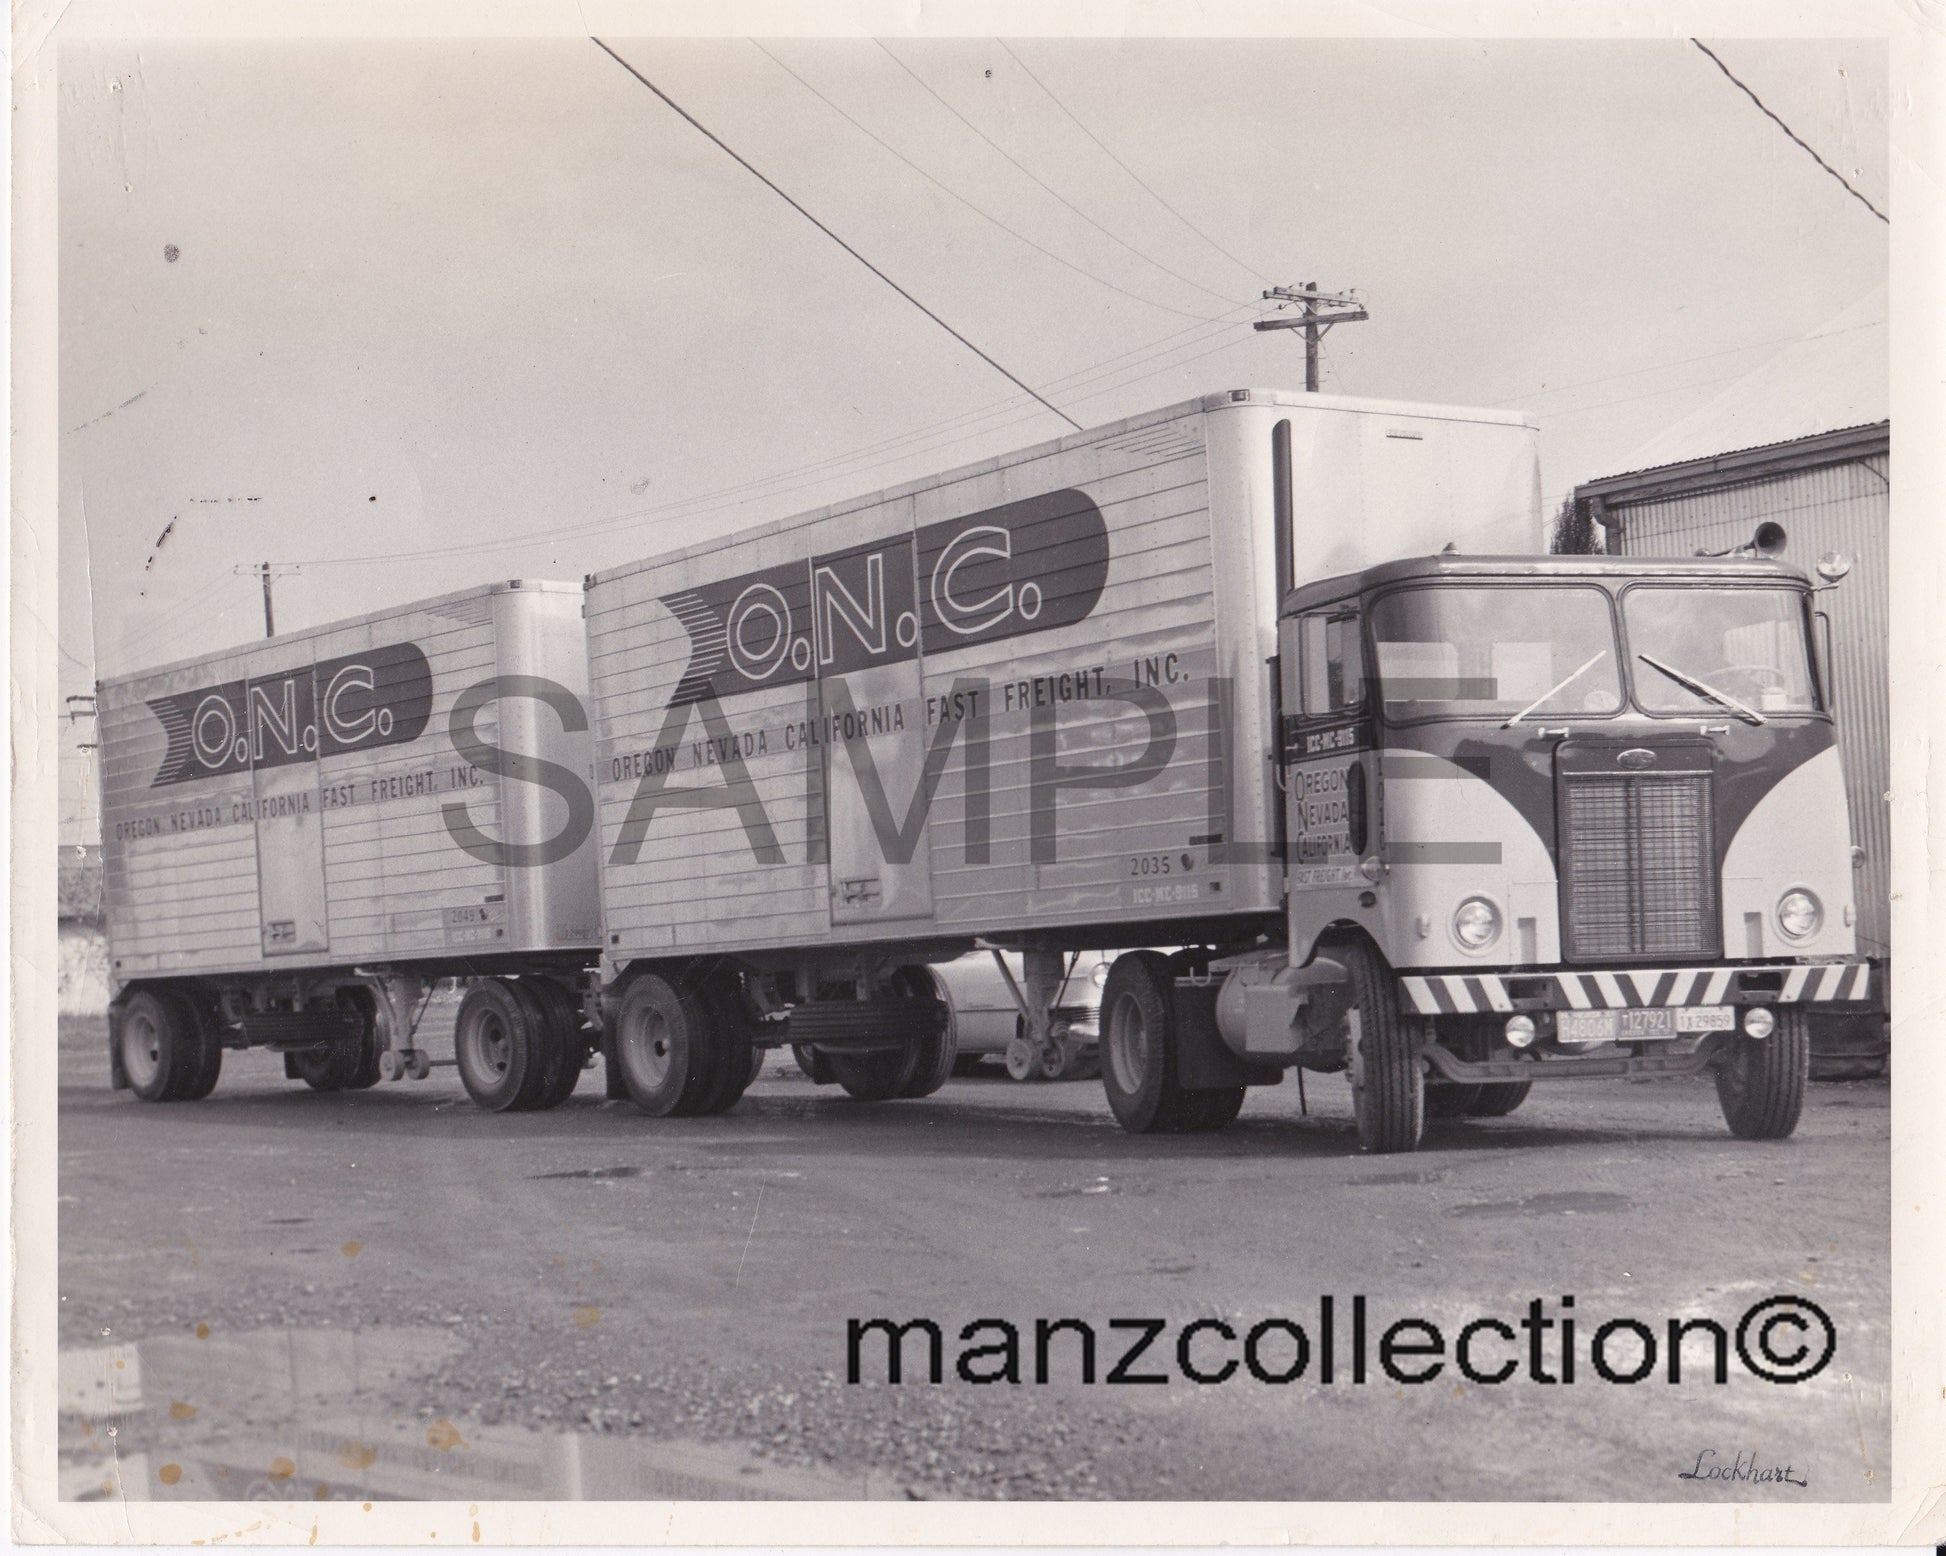 8X10 b & w semi-truck photo '50's Peterbilt ONC doubles - Transportation Treasure